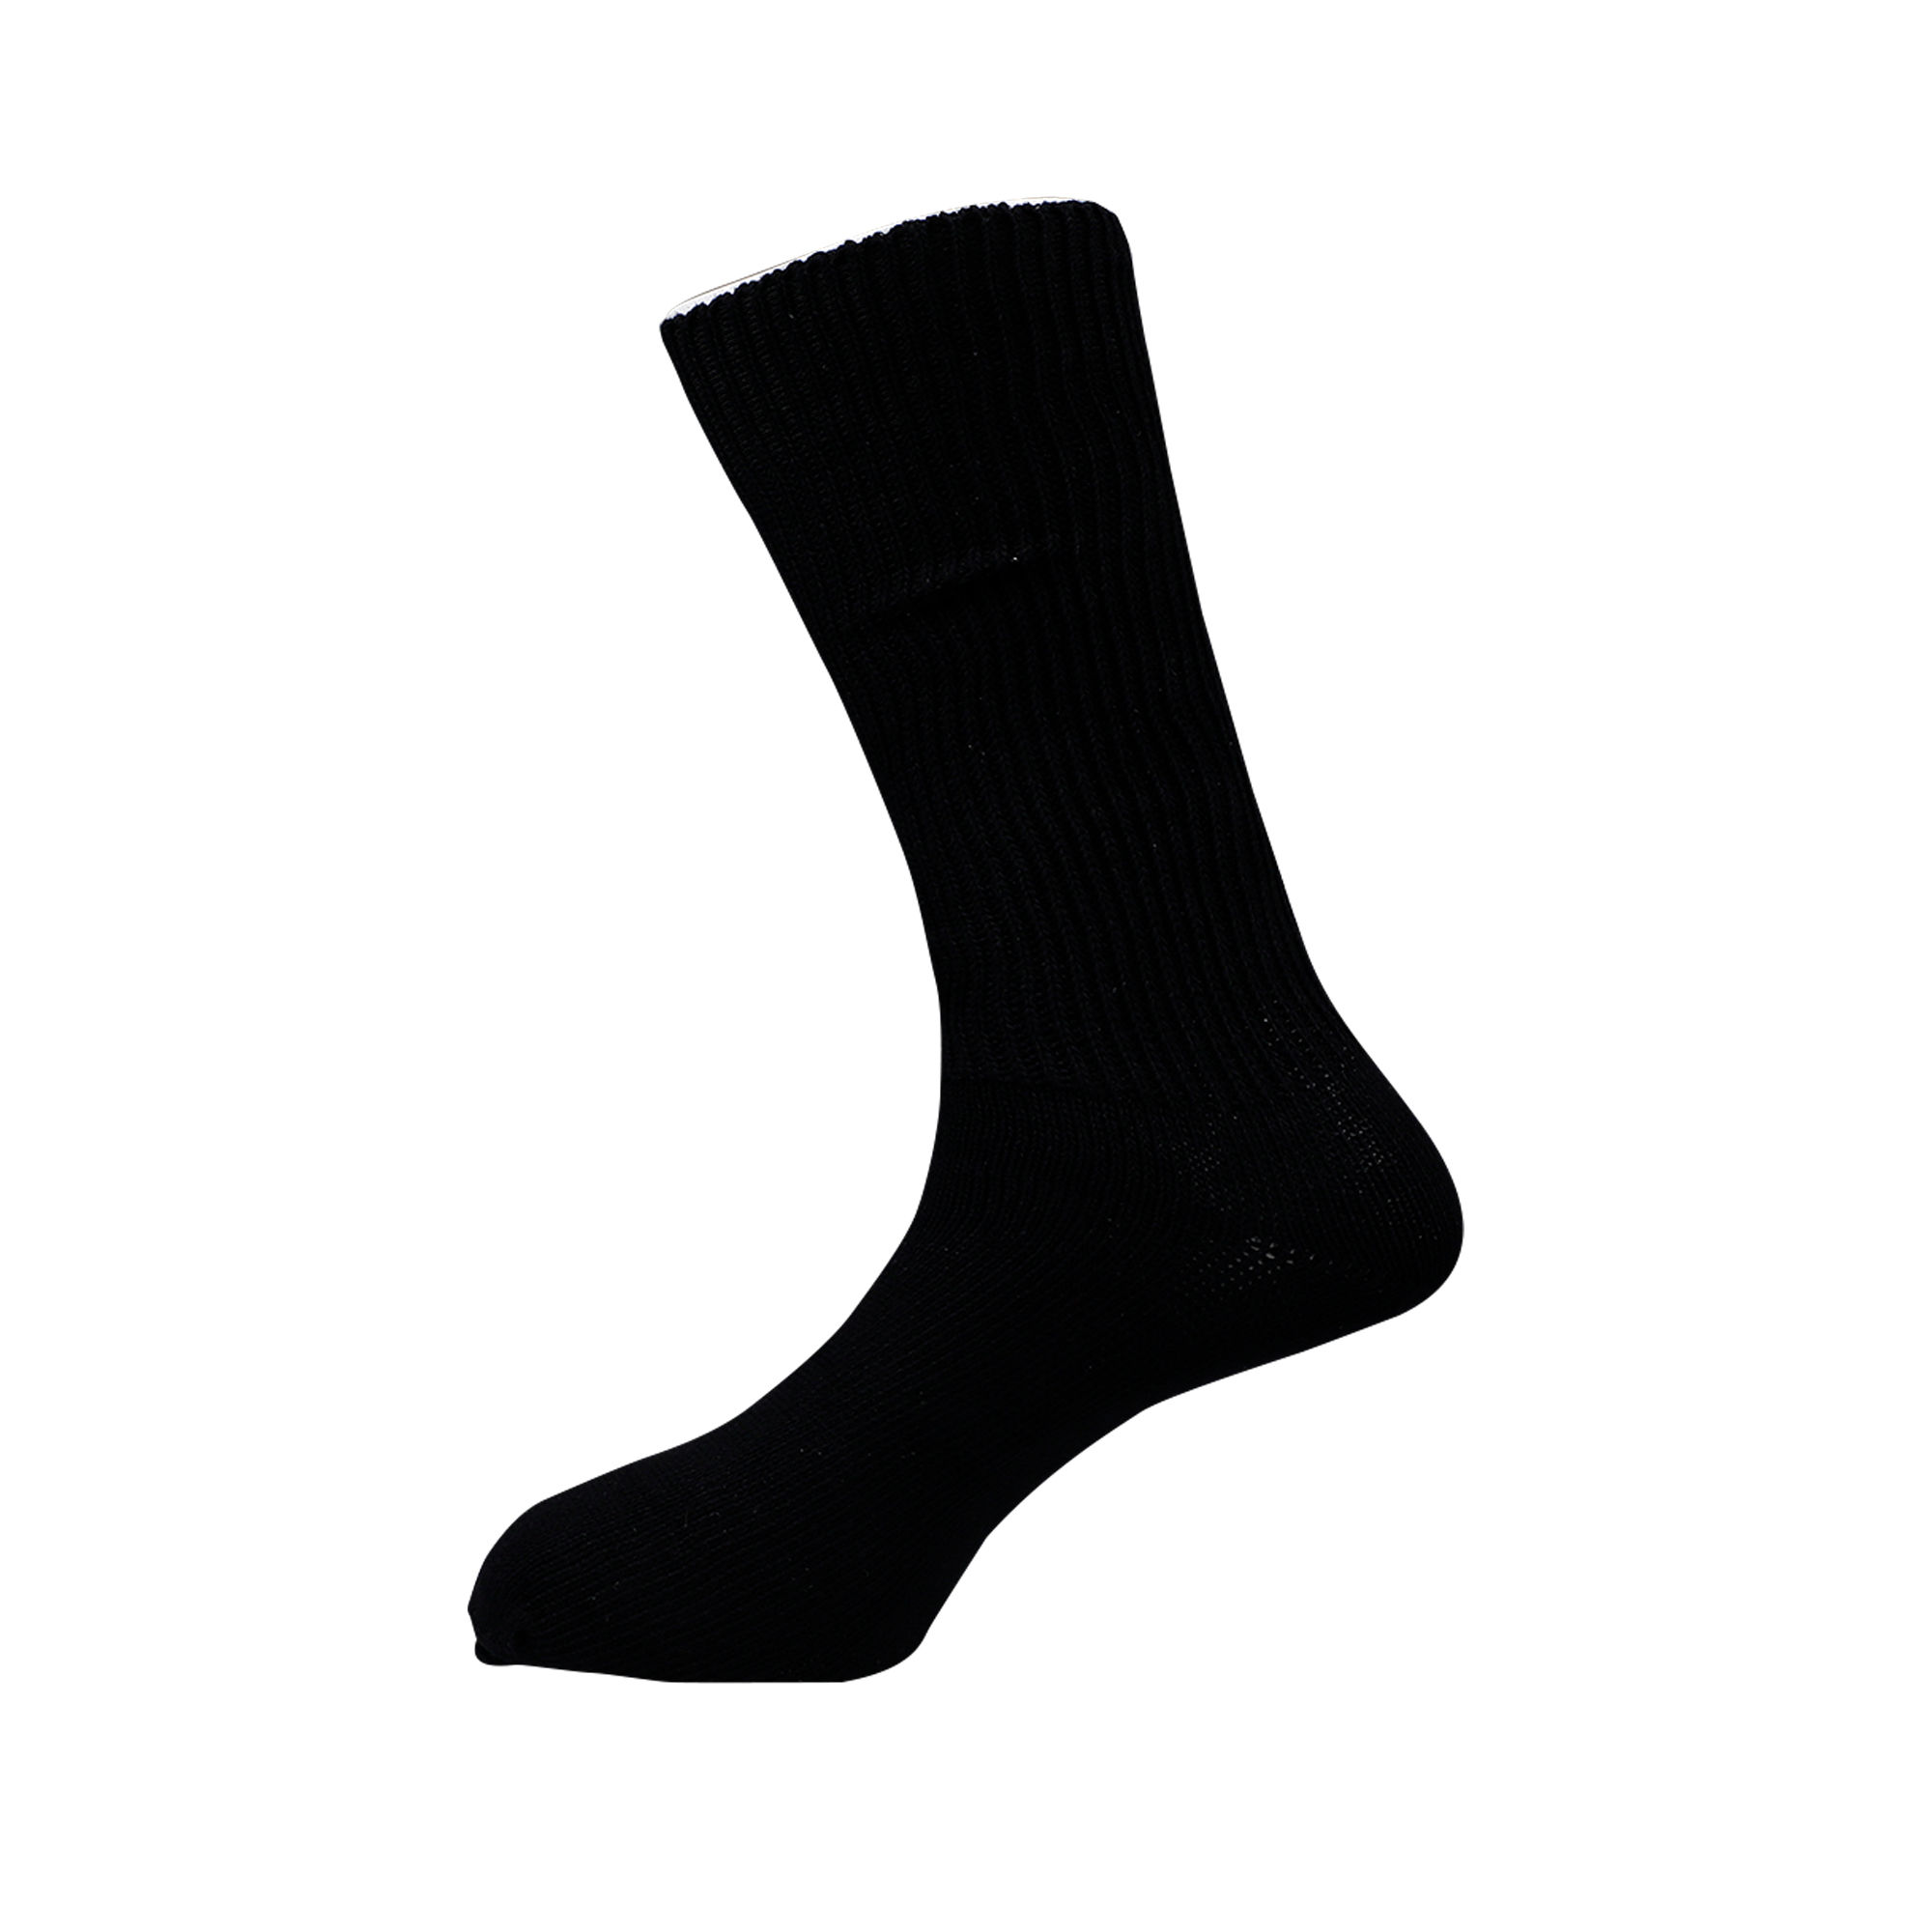 Renewa Simcan Comfort Sock Large Dr.Sayanis , Pack of 1 